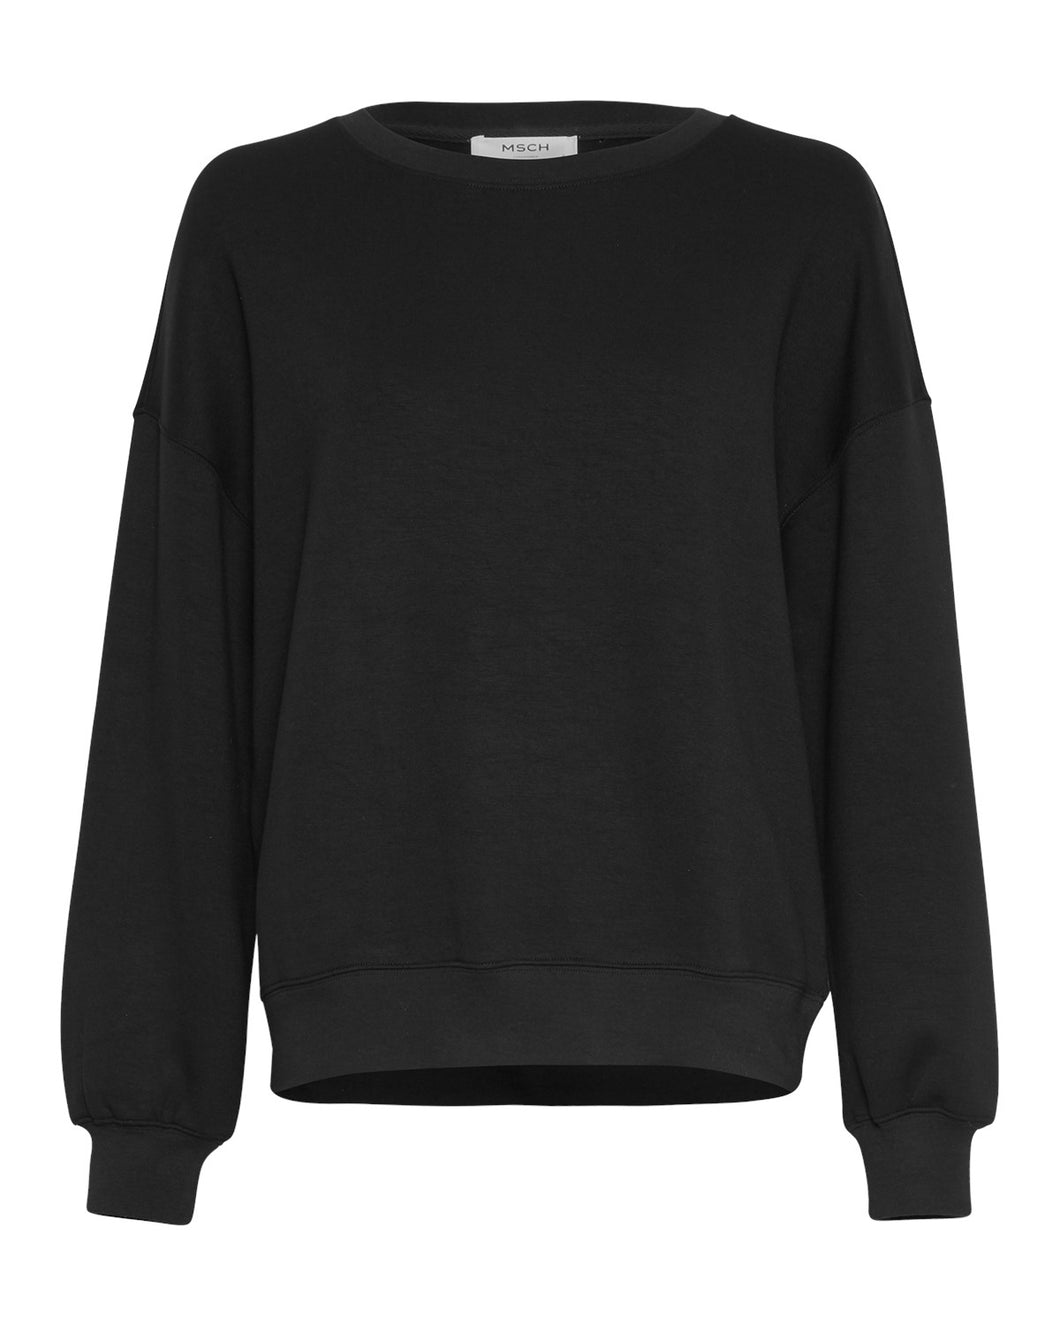 MSCHIMA Sweater, black beauty